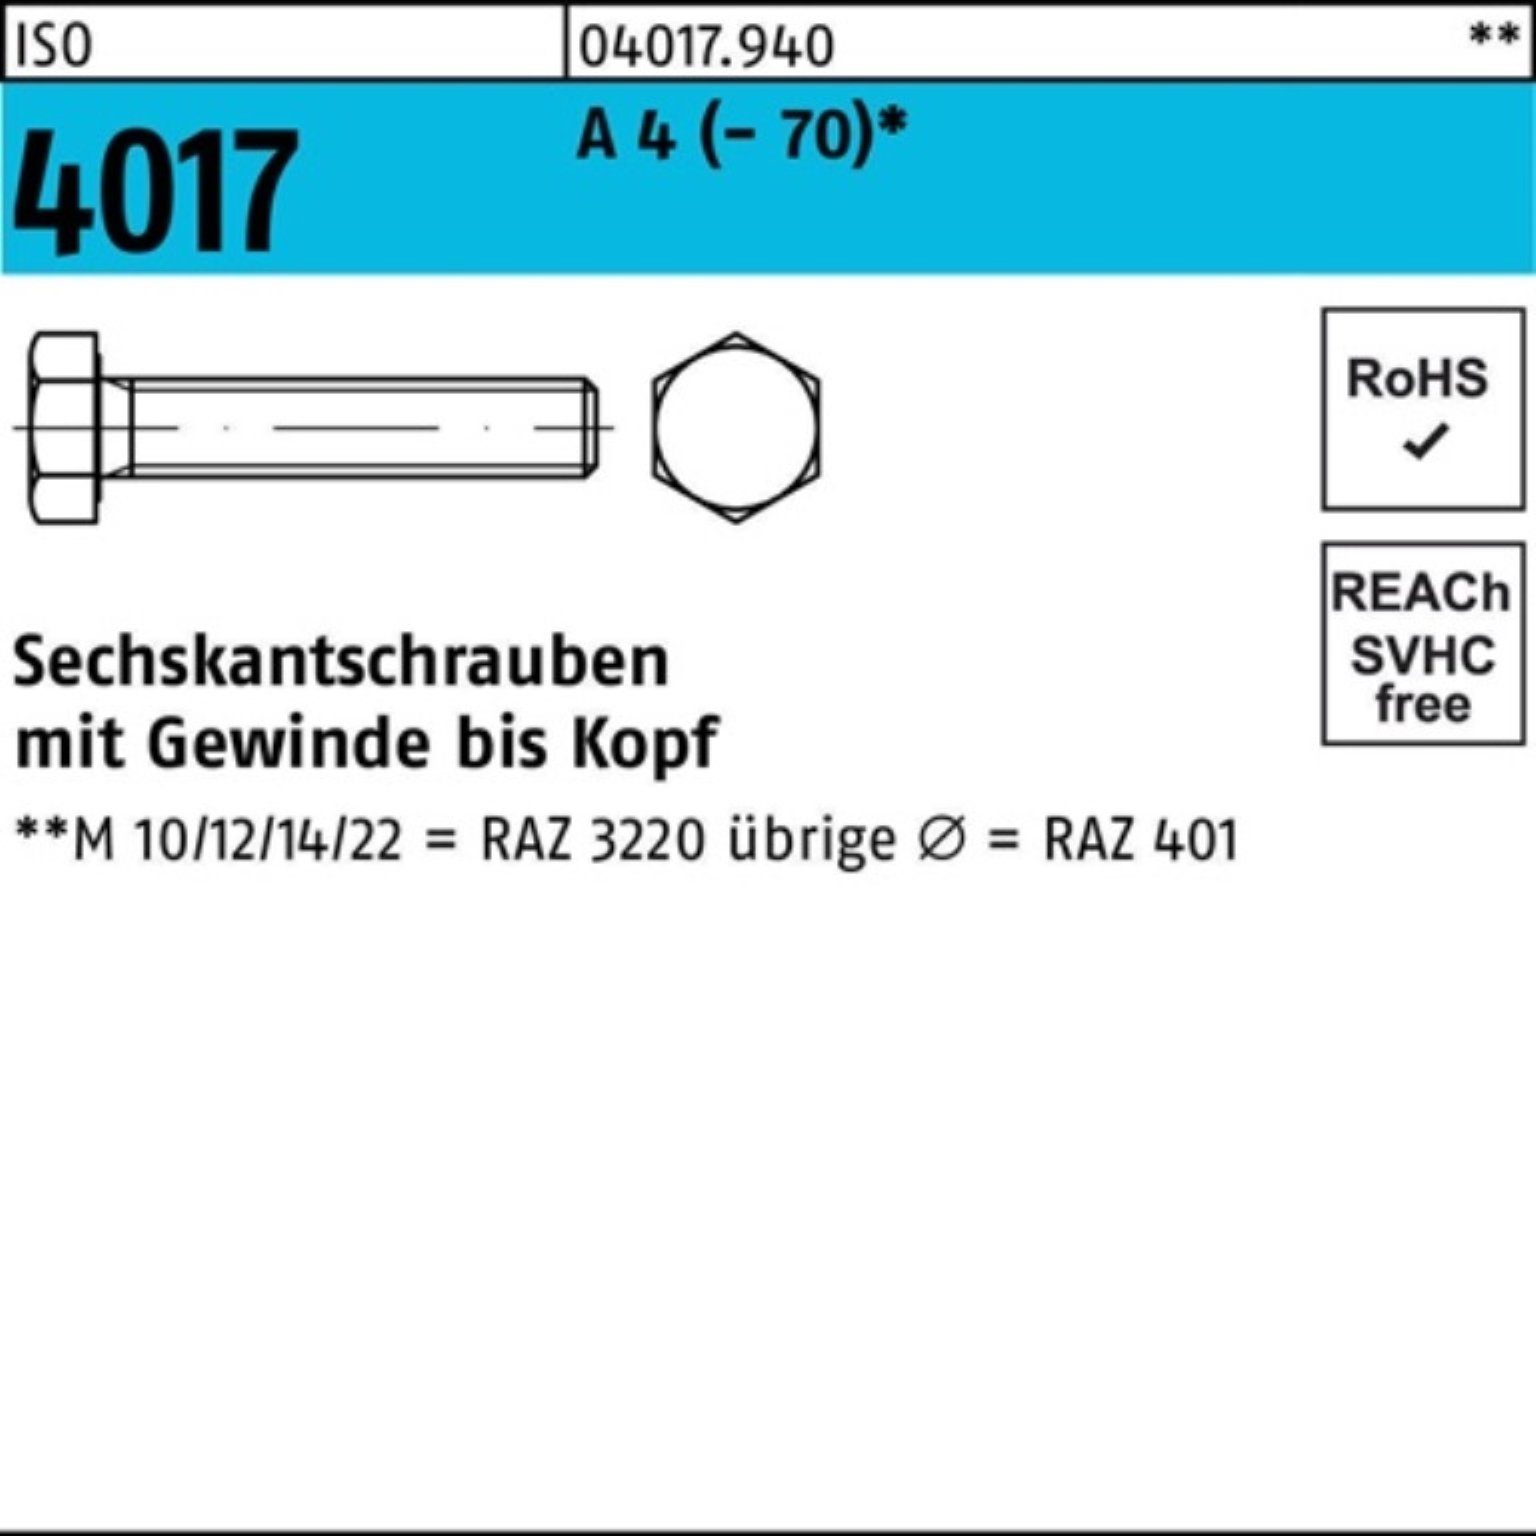 Bufab Sechskantschraube 4 A I 4017 100er VG Sechskantschraube Stück 1 Pack 50 ISO M18x (70)